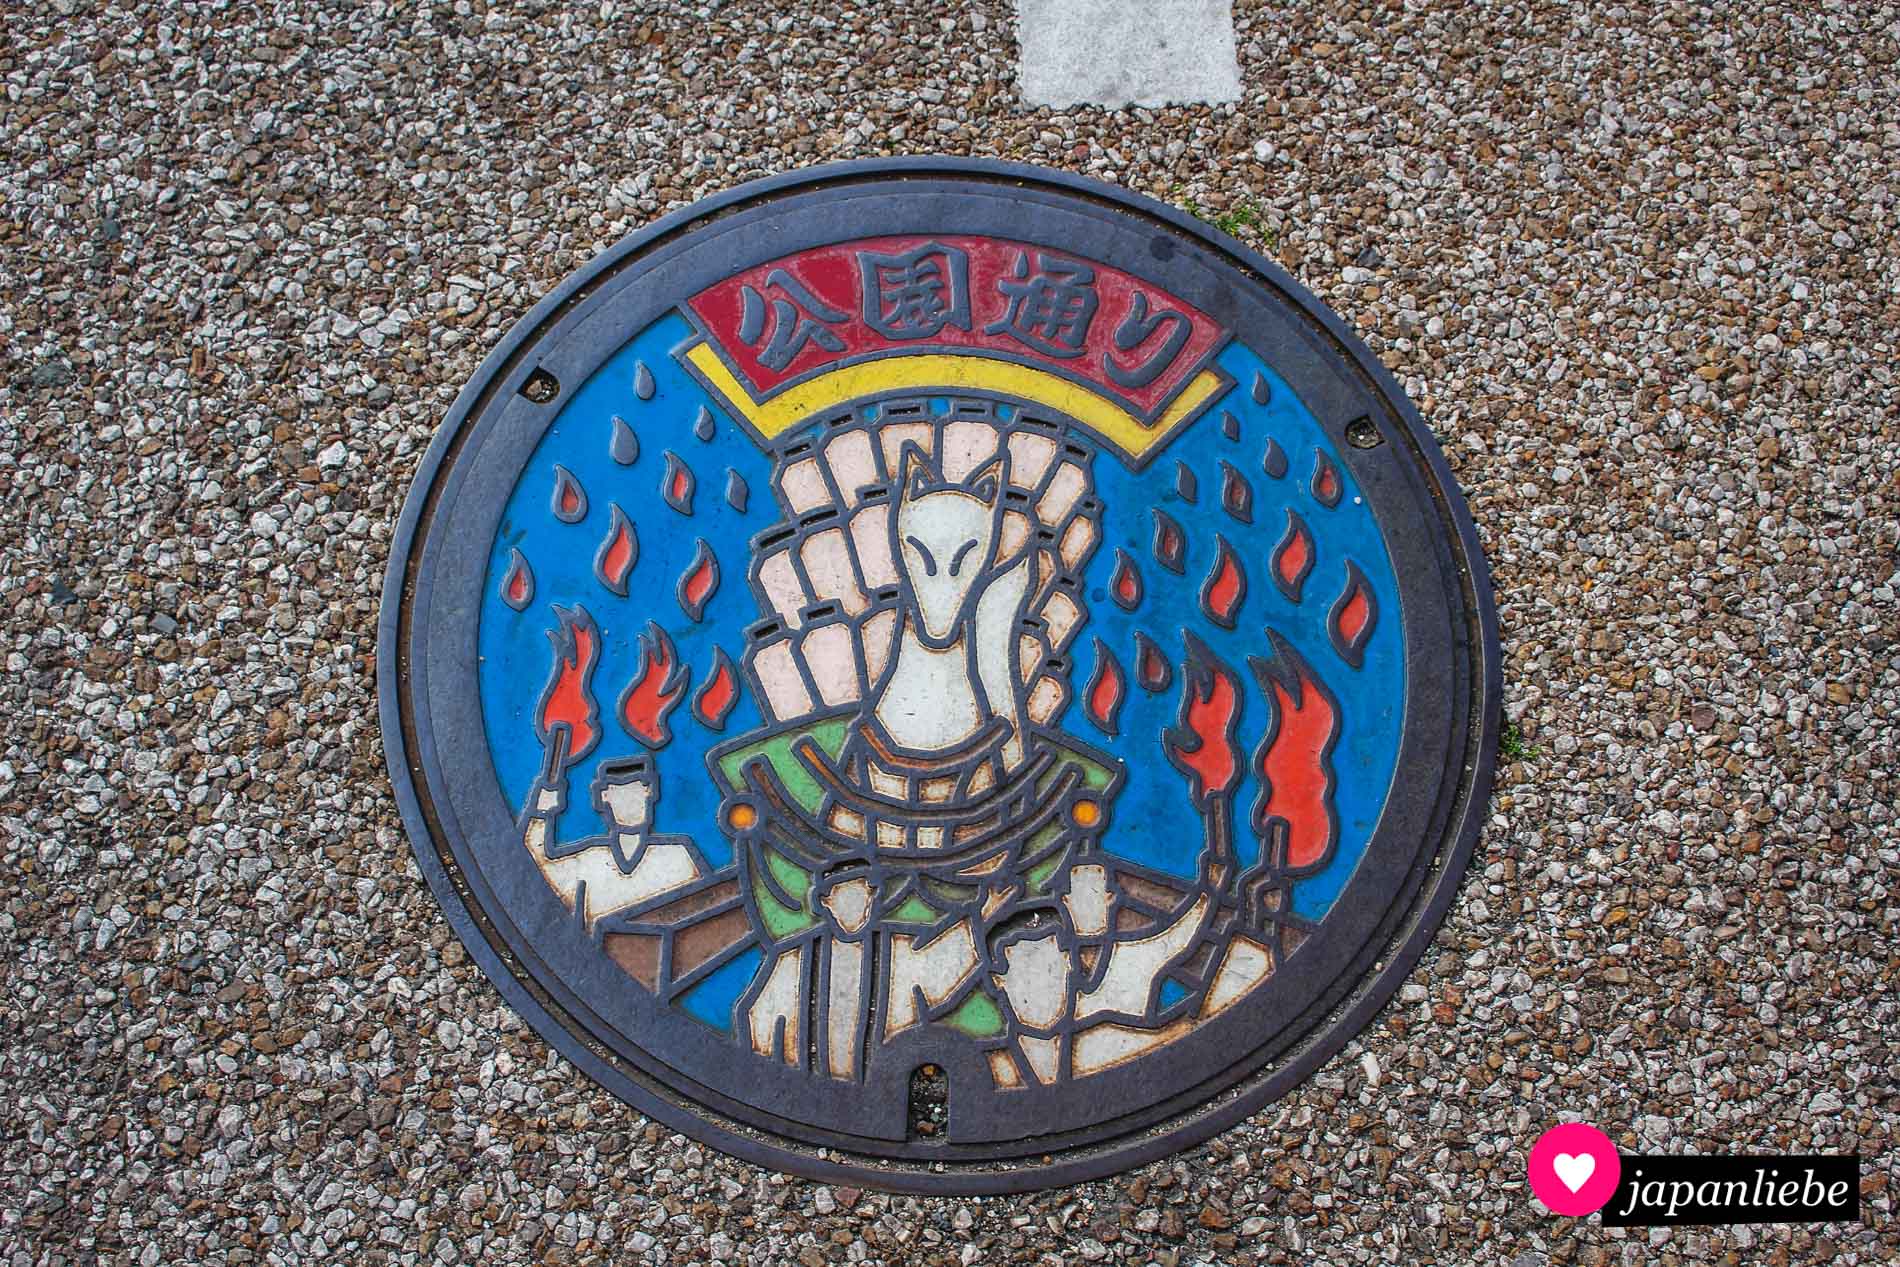 Eine o-mikoshi-Göttersänfte mit Fuchs und Laternen wird bei diesem Kanaldeckelbild durch die Straßen getragen.